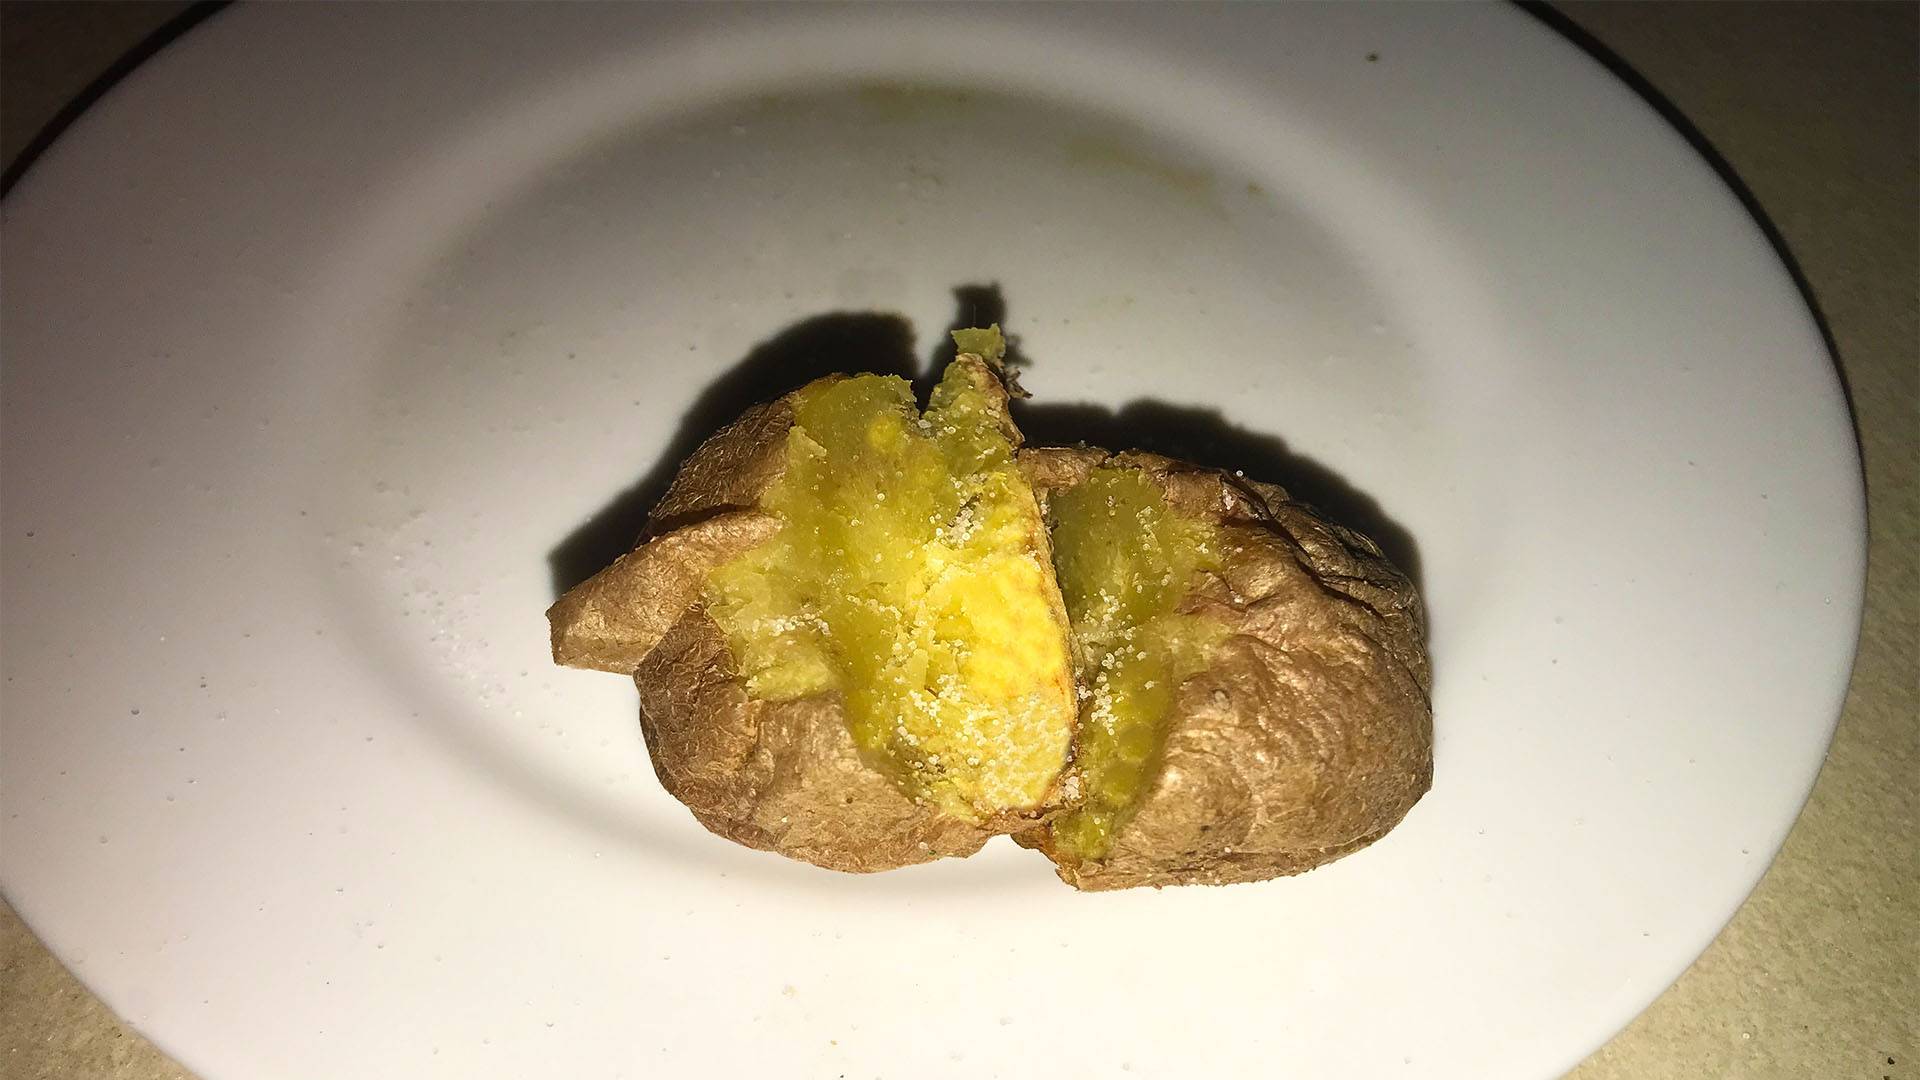 Villámgyors héjában főtt krumpli mikróban - Mikrós héjában sült burgonya című cikk borítóképe